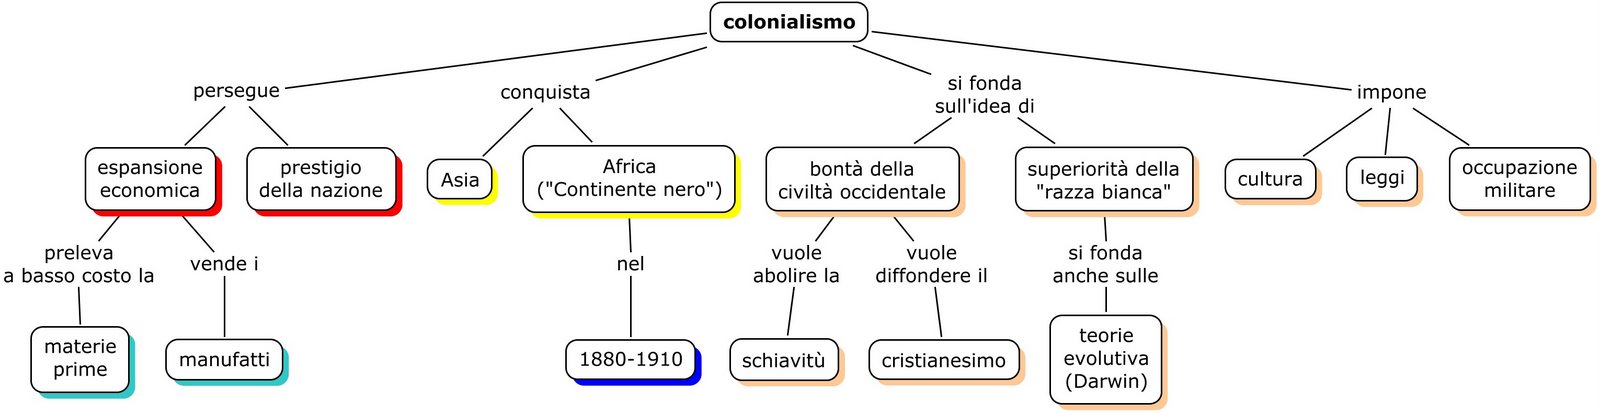 Colonialismo nel Novecento Mappa concettuale